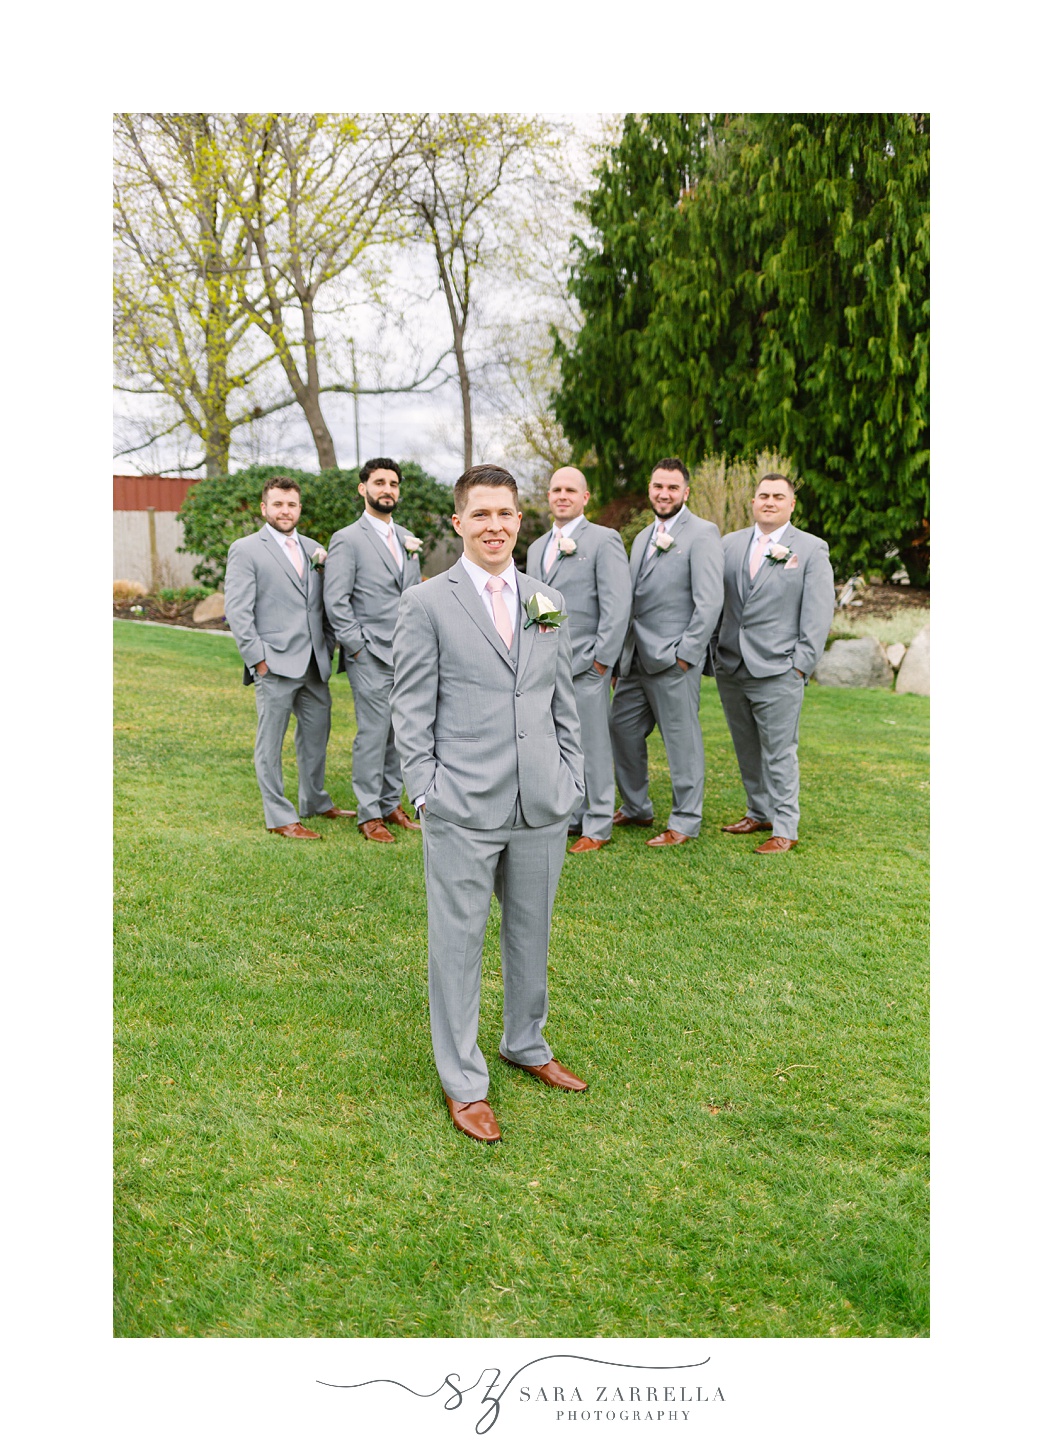 groom in grey suit poses with groomsmen behind him